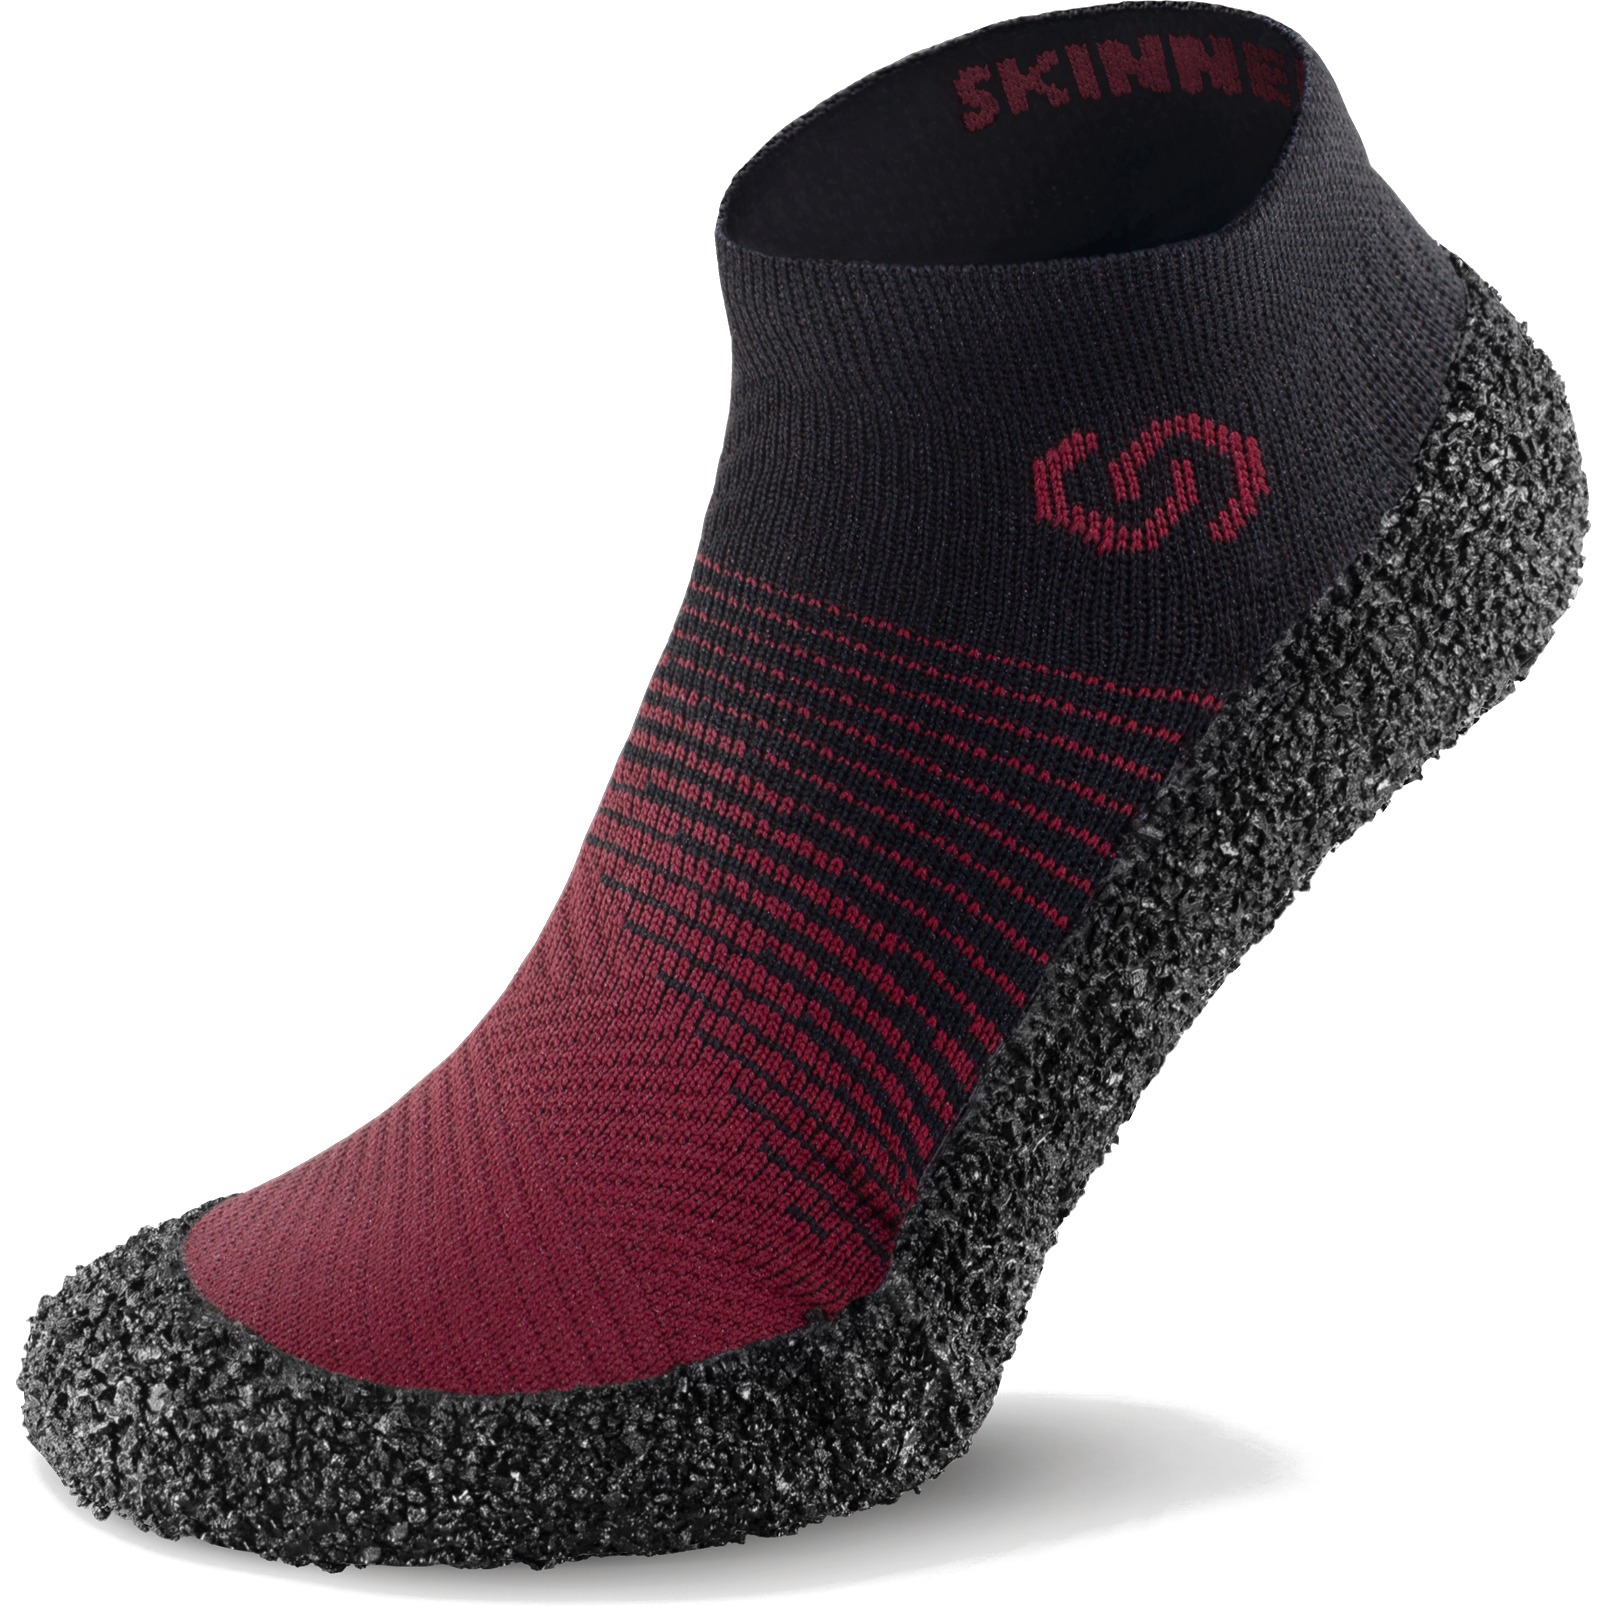 Productfoto van Skinners Sock Shoes 2.0 - carmine